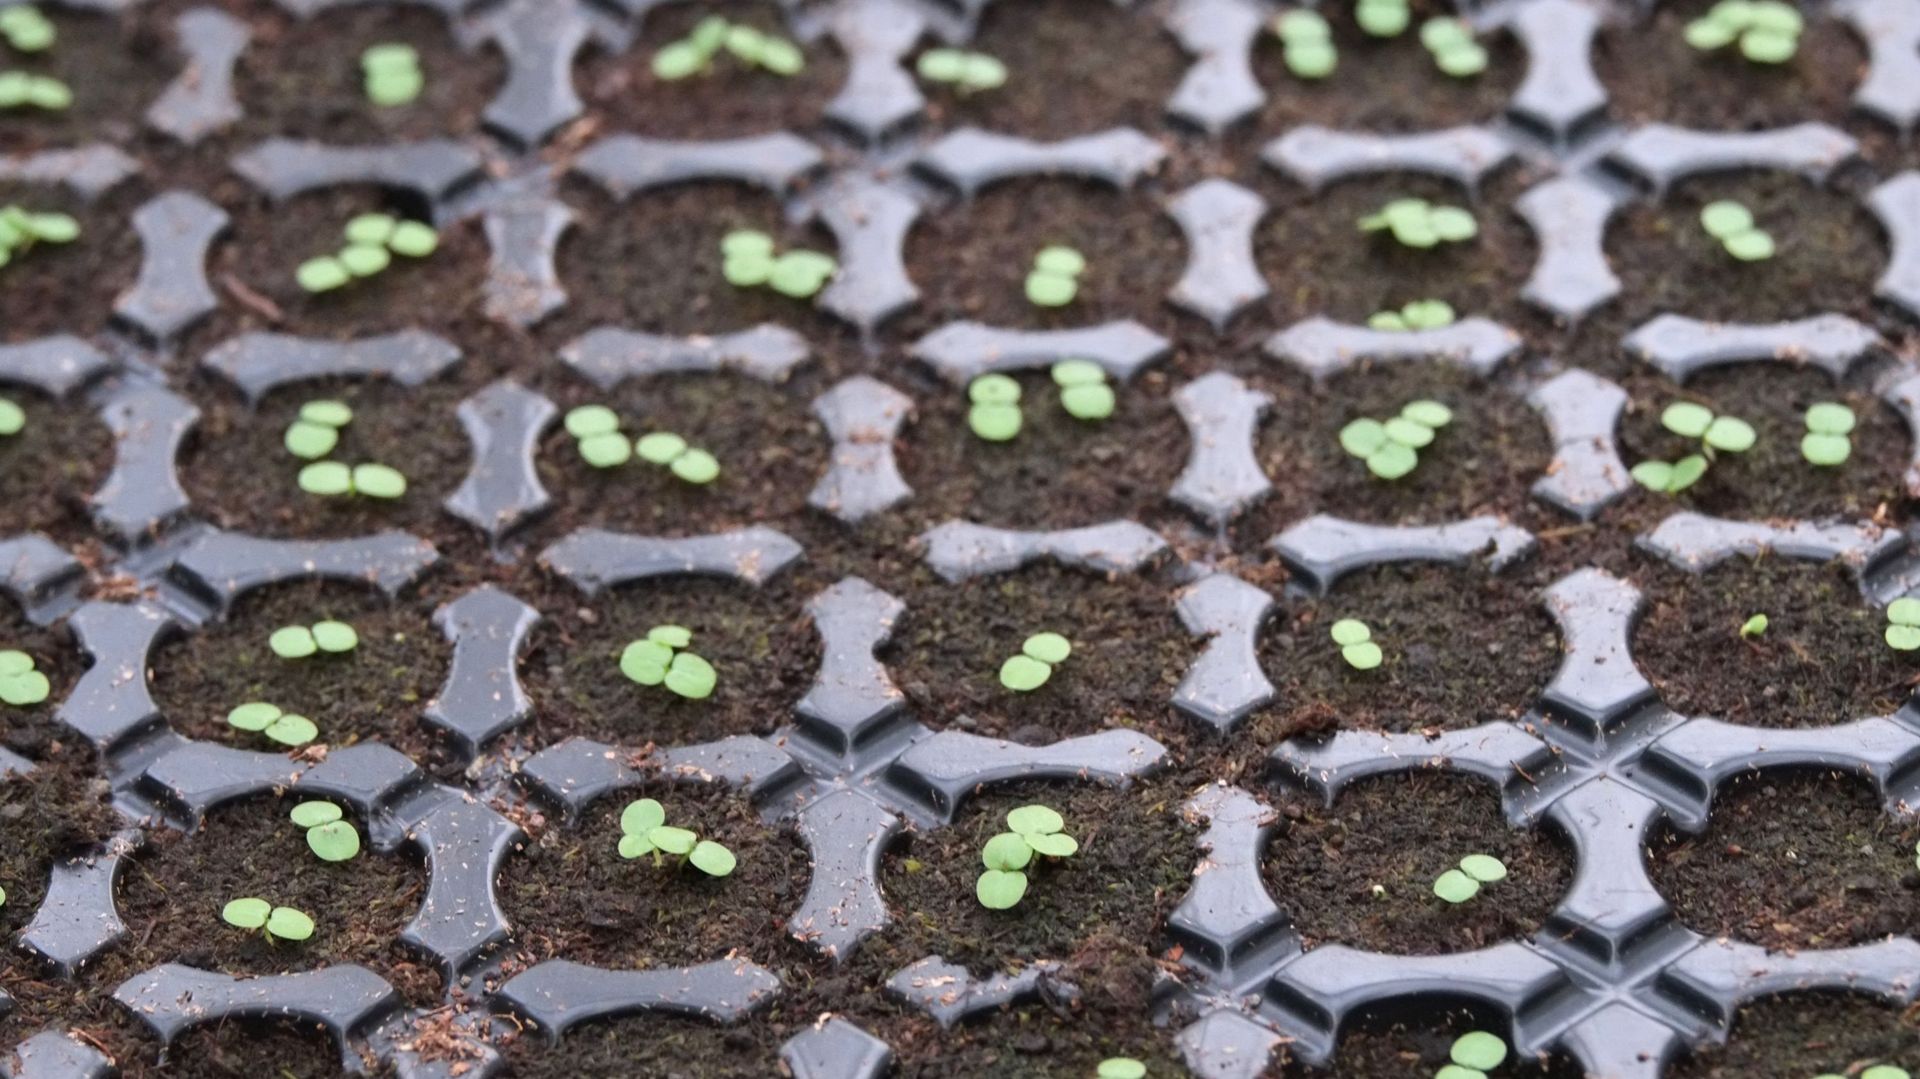 De bons résultats de germination et de début de croissance dans du compost maison démontrent qu’il est parfaitement possible de se passer de terreau de semis du commerce.